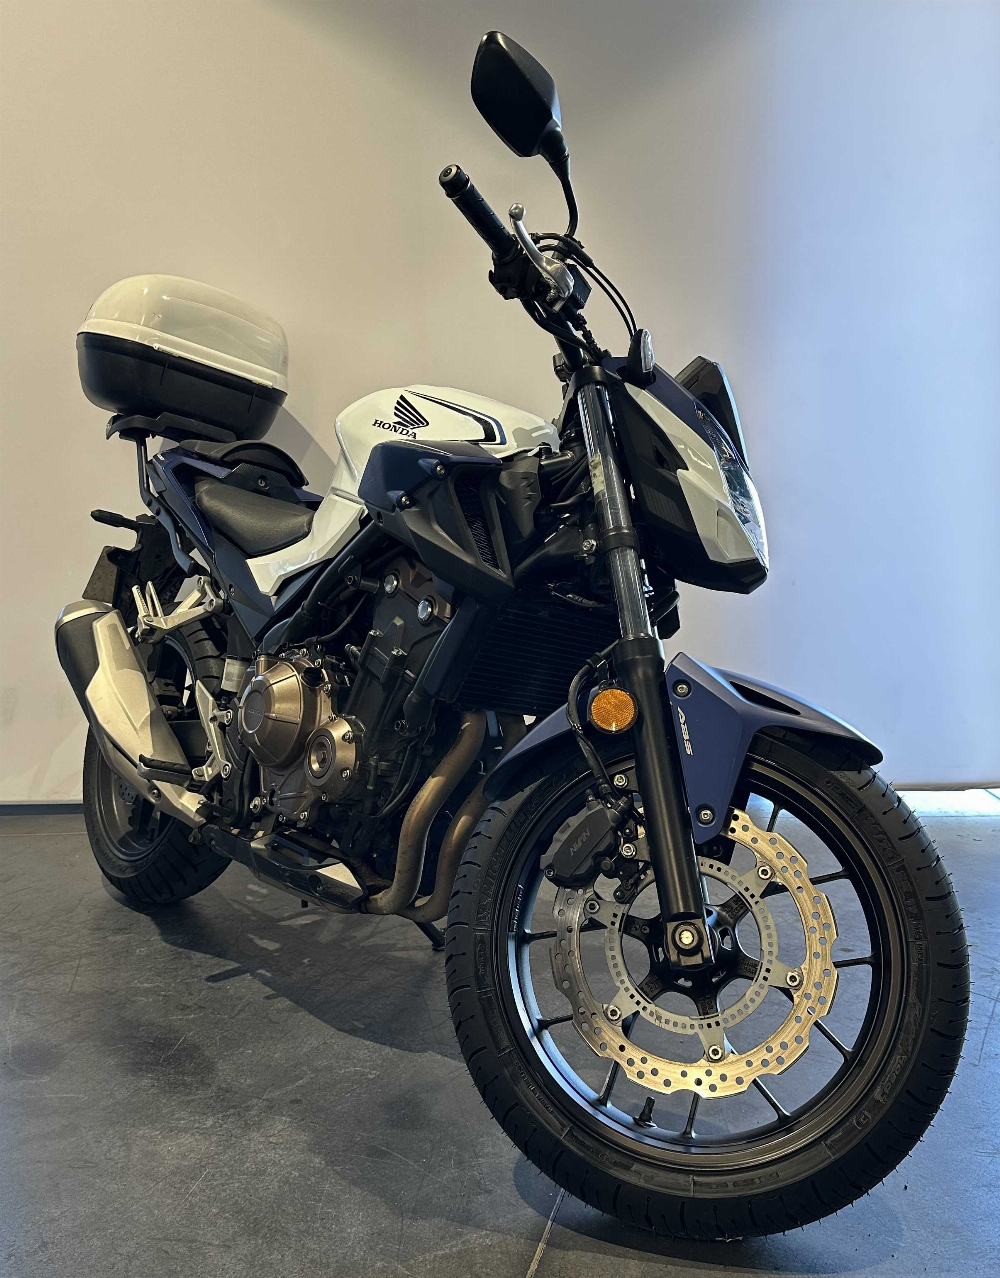 Honda CB 500 F ABS 2019 vue 3/4 droite